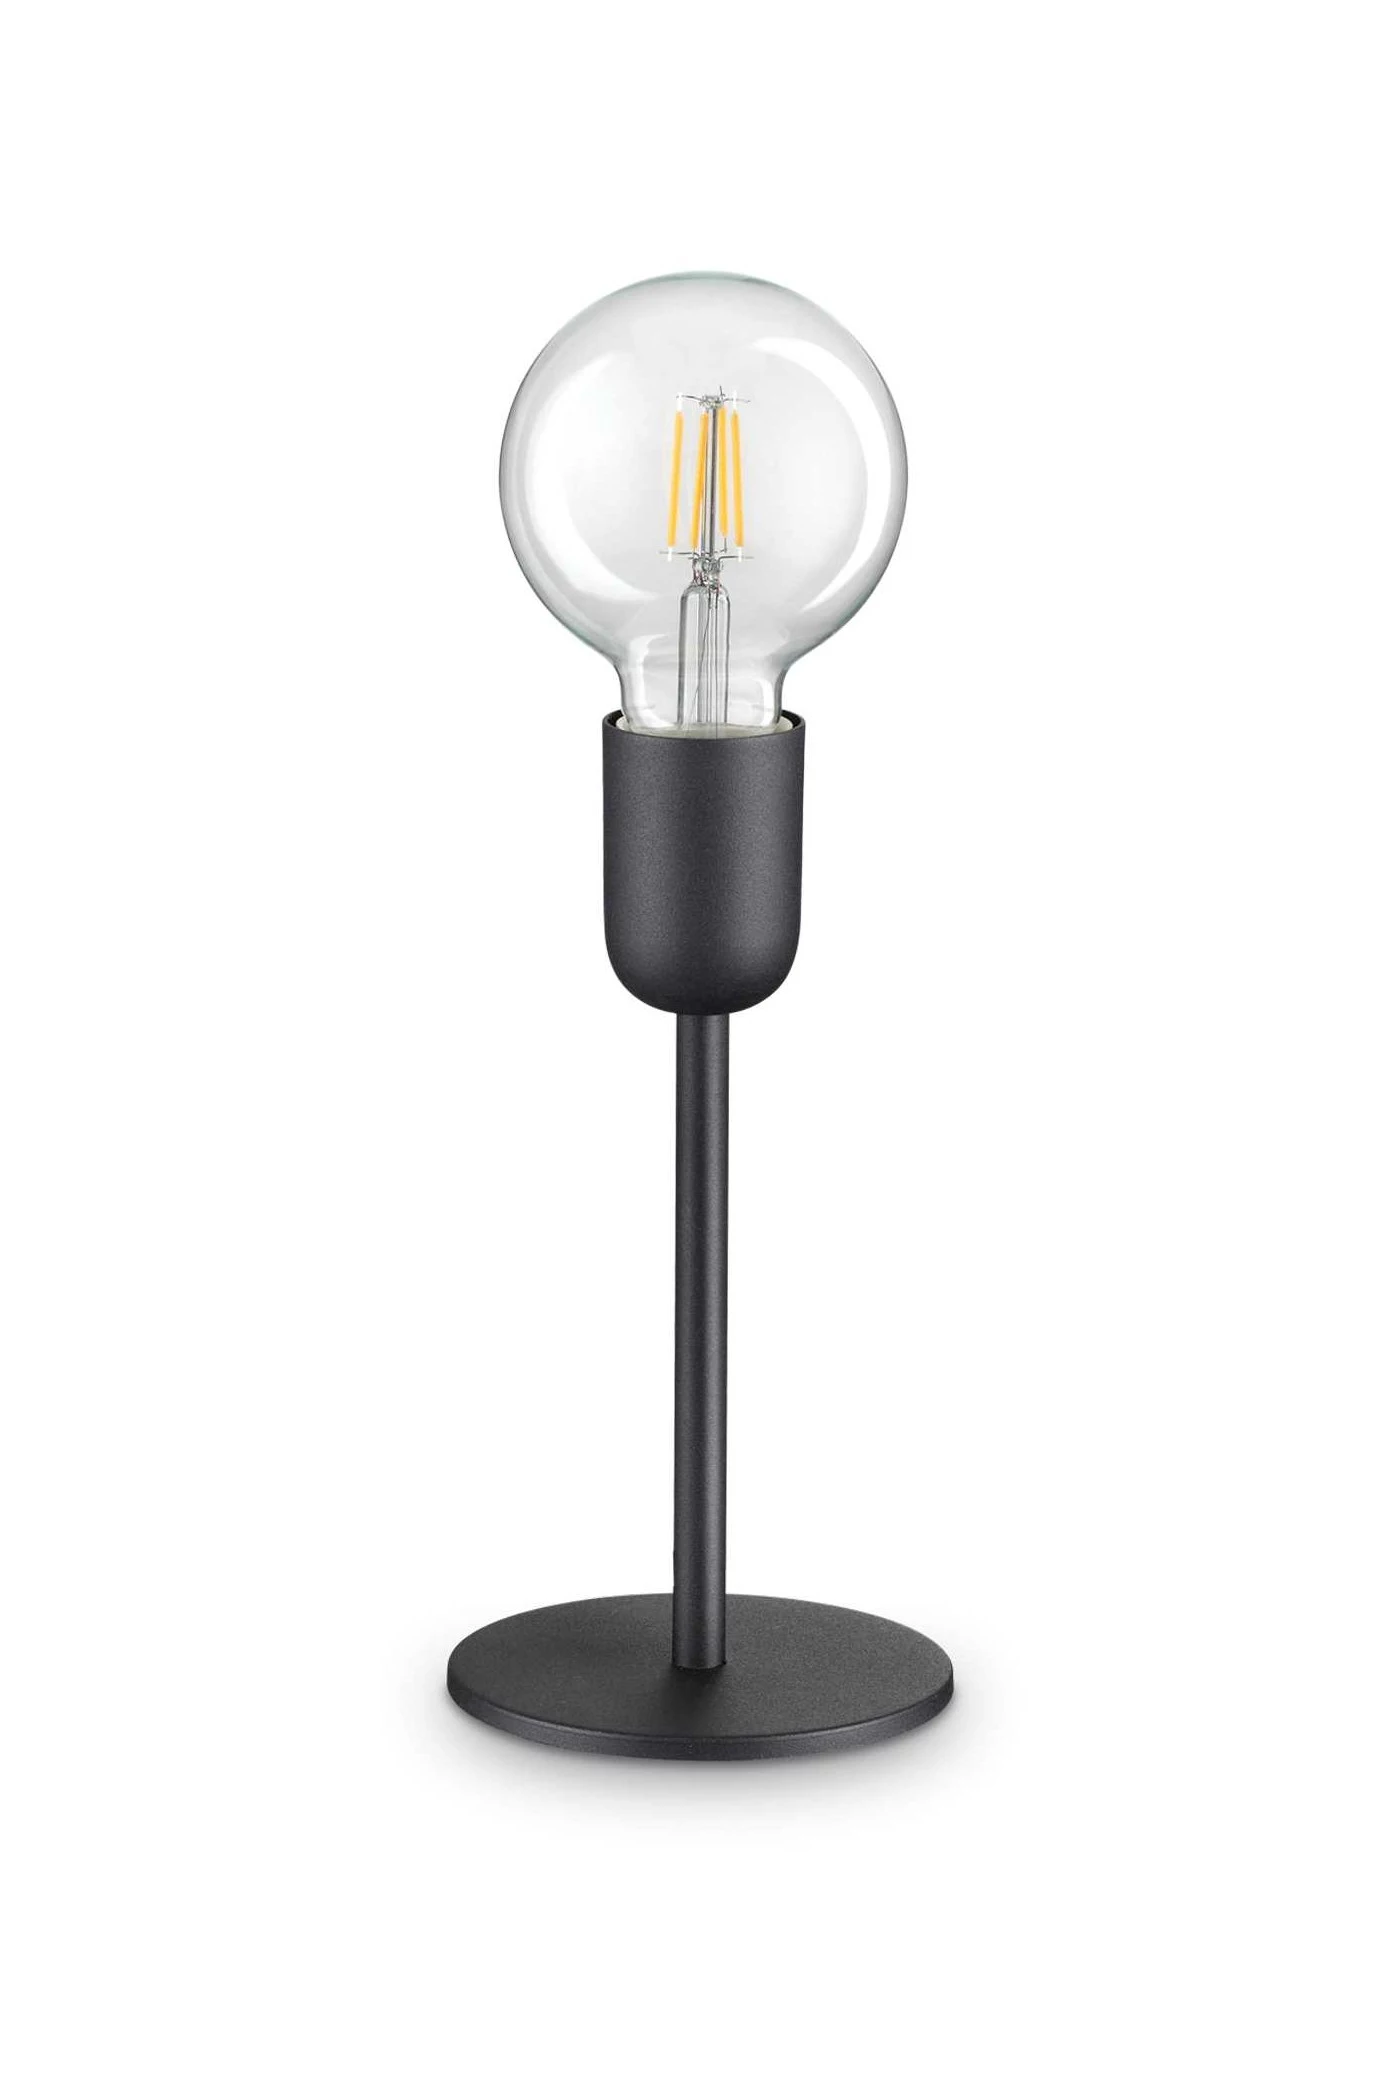   
                        Настільна лампа IDEAL LUX (Італія) 46639    
                         у стилі хай-тек.  
                        Тип джерела світла: cвітлодіодні led, енергозберігаючі, розжарювання.                         Форма: коло.                                                                          фото 1